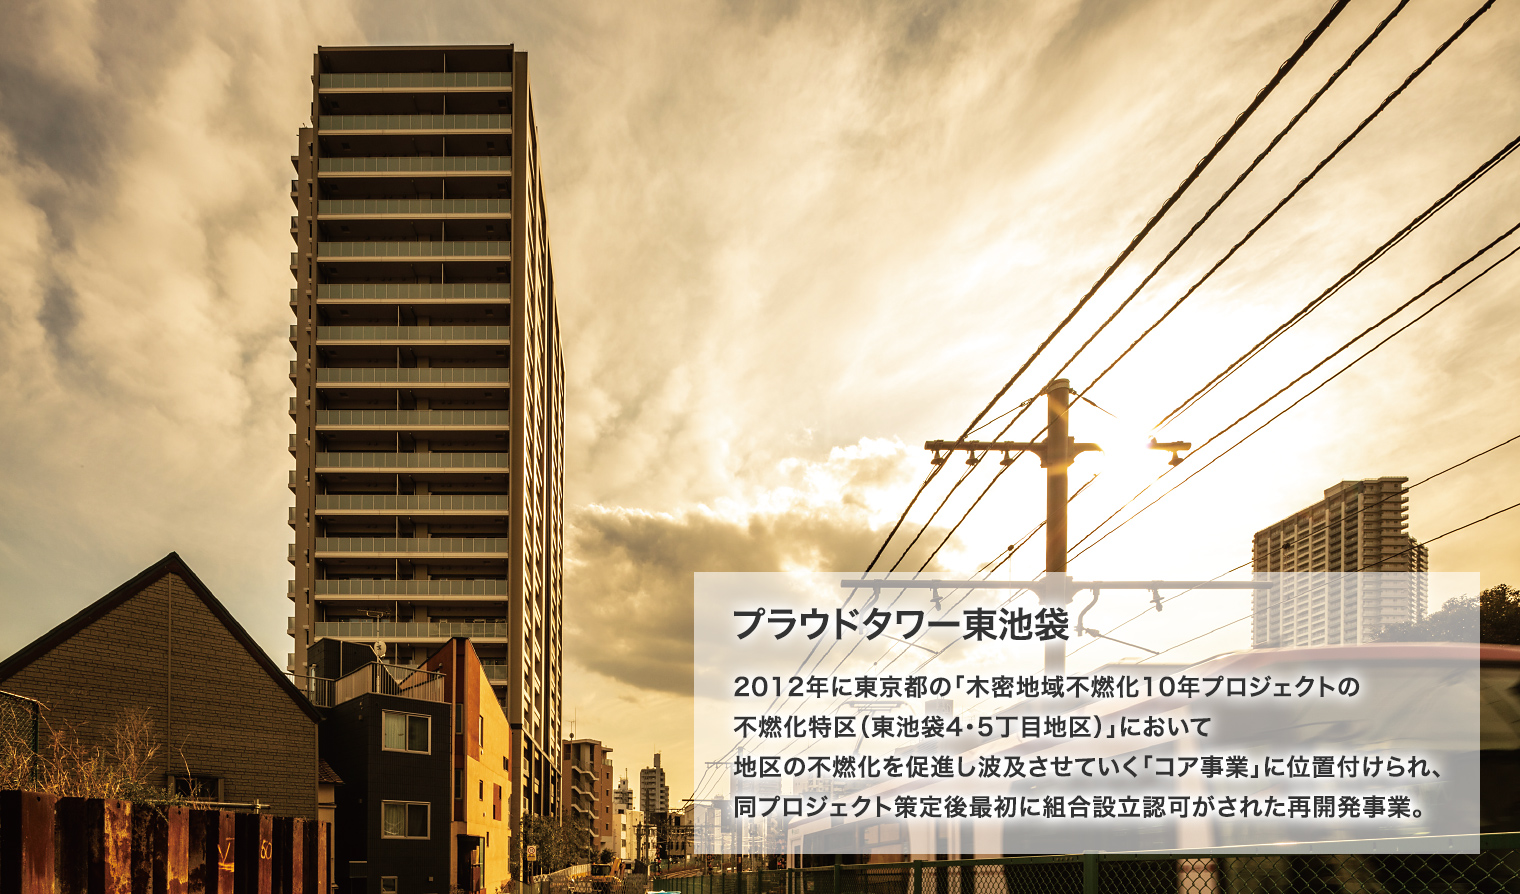 プラウドタワー東池袋 2012年に東京都の「木密地域不燃化10年プロジェクトの不燃化特区（東池袋4・5丁目地区）」において地区の不燃化を促進し波及させていく「コア事業」に位置付けられ、同プロジェクト策定後最初に組合設立認可がされた再開発事業。